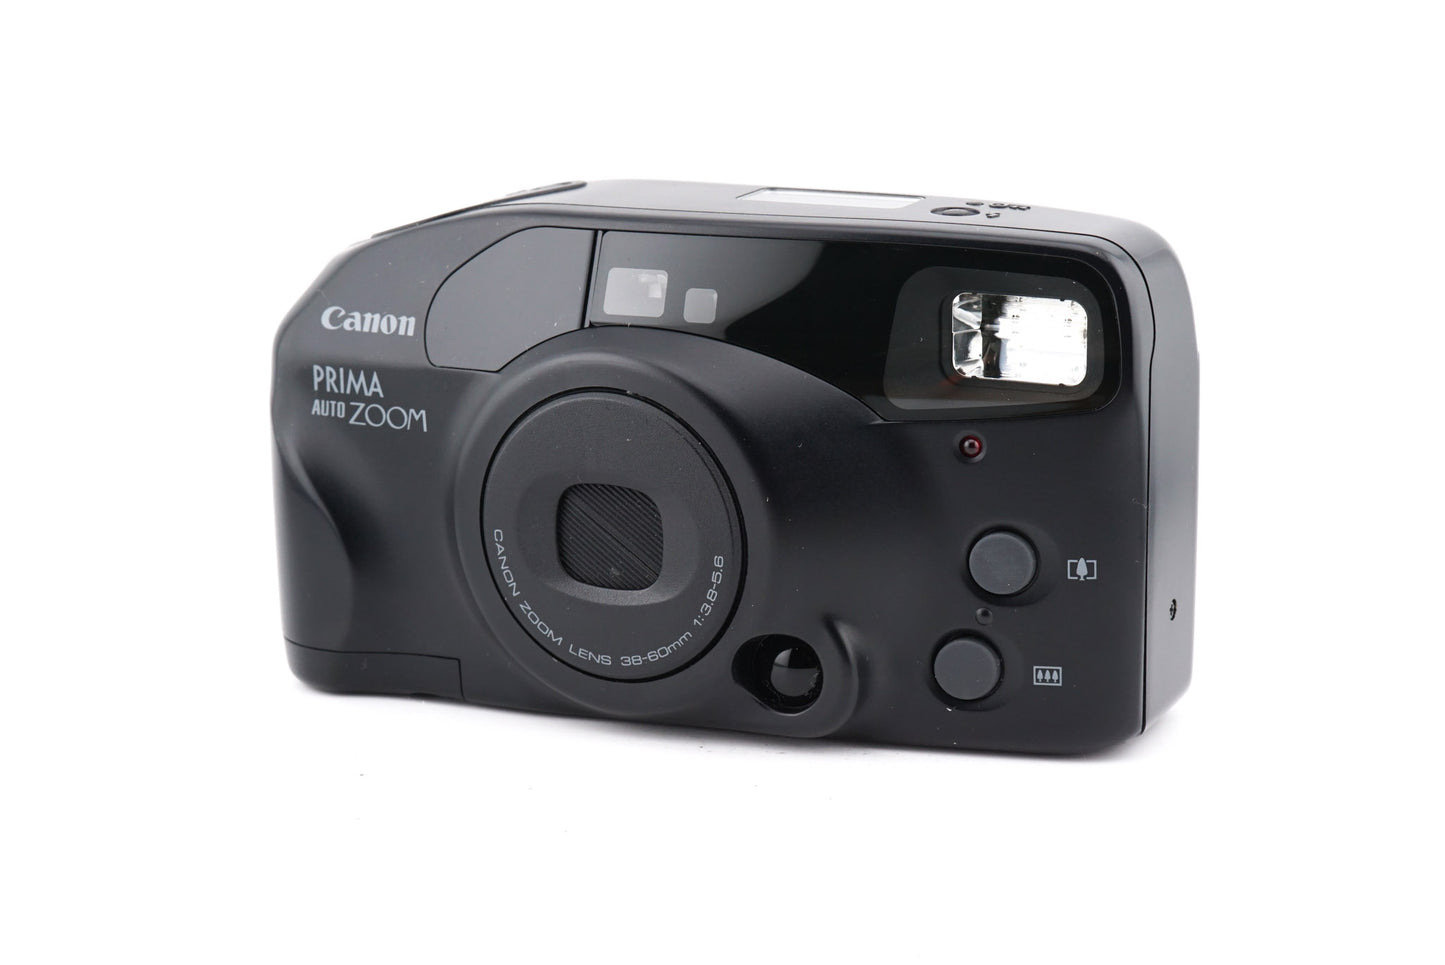 Canon Prima Auto Zoom - Camera